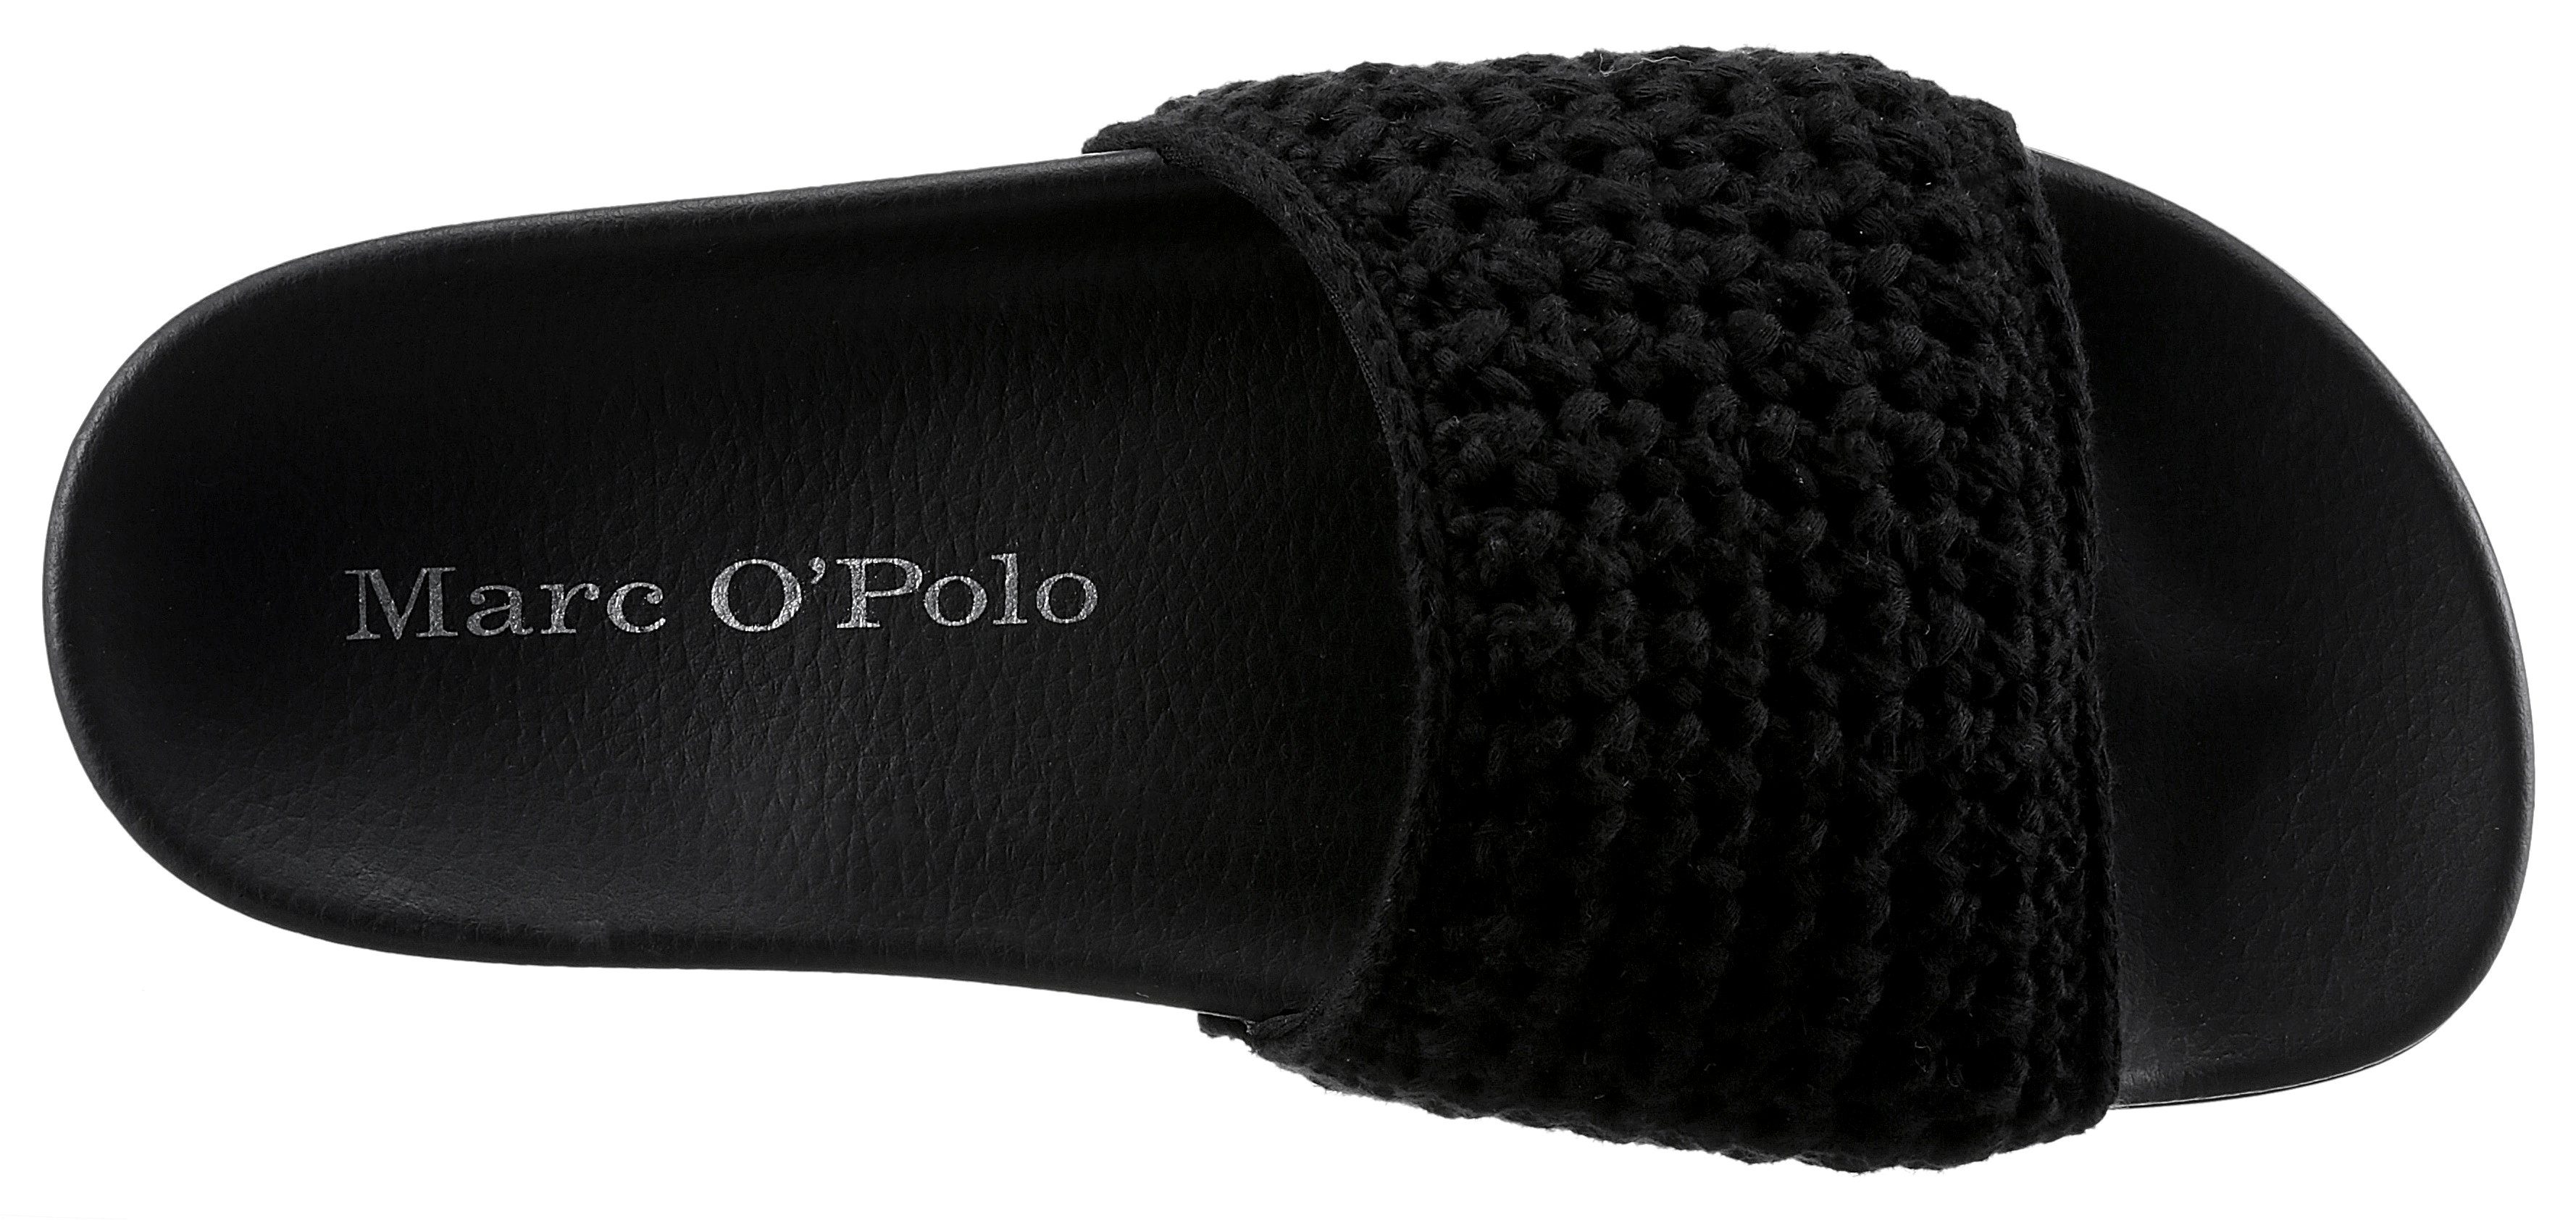 O'Polo Marc schwarz Bandage mit Pantolette breiter